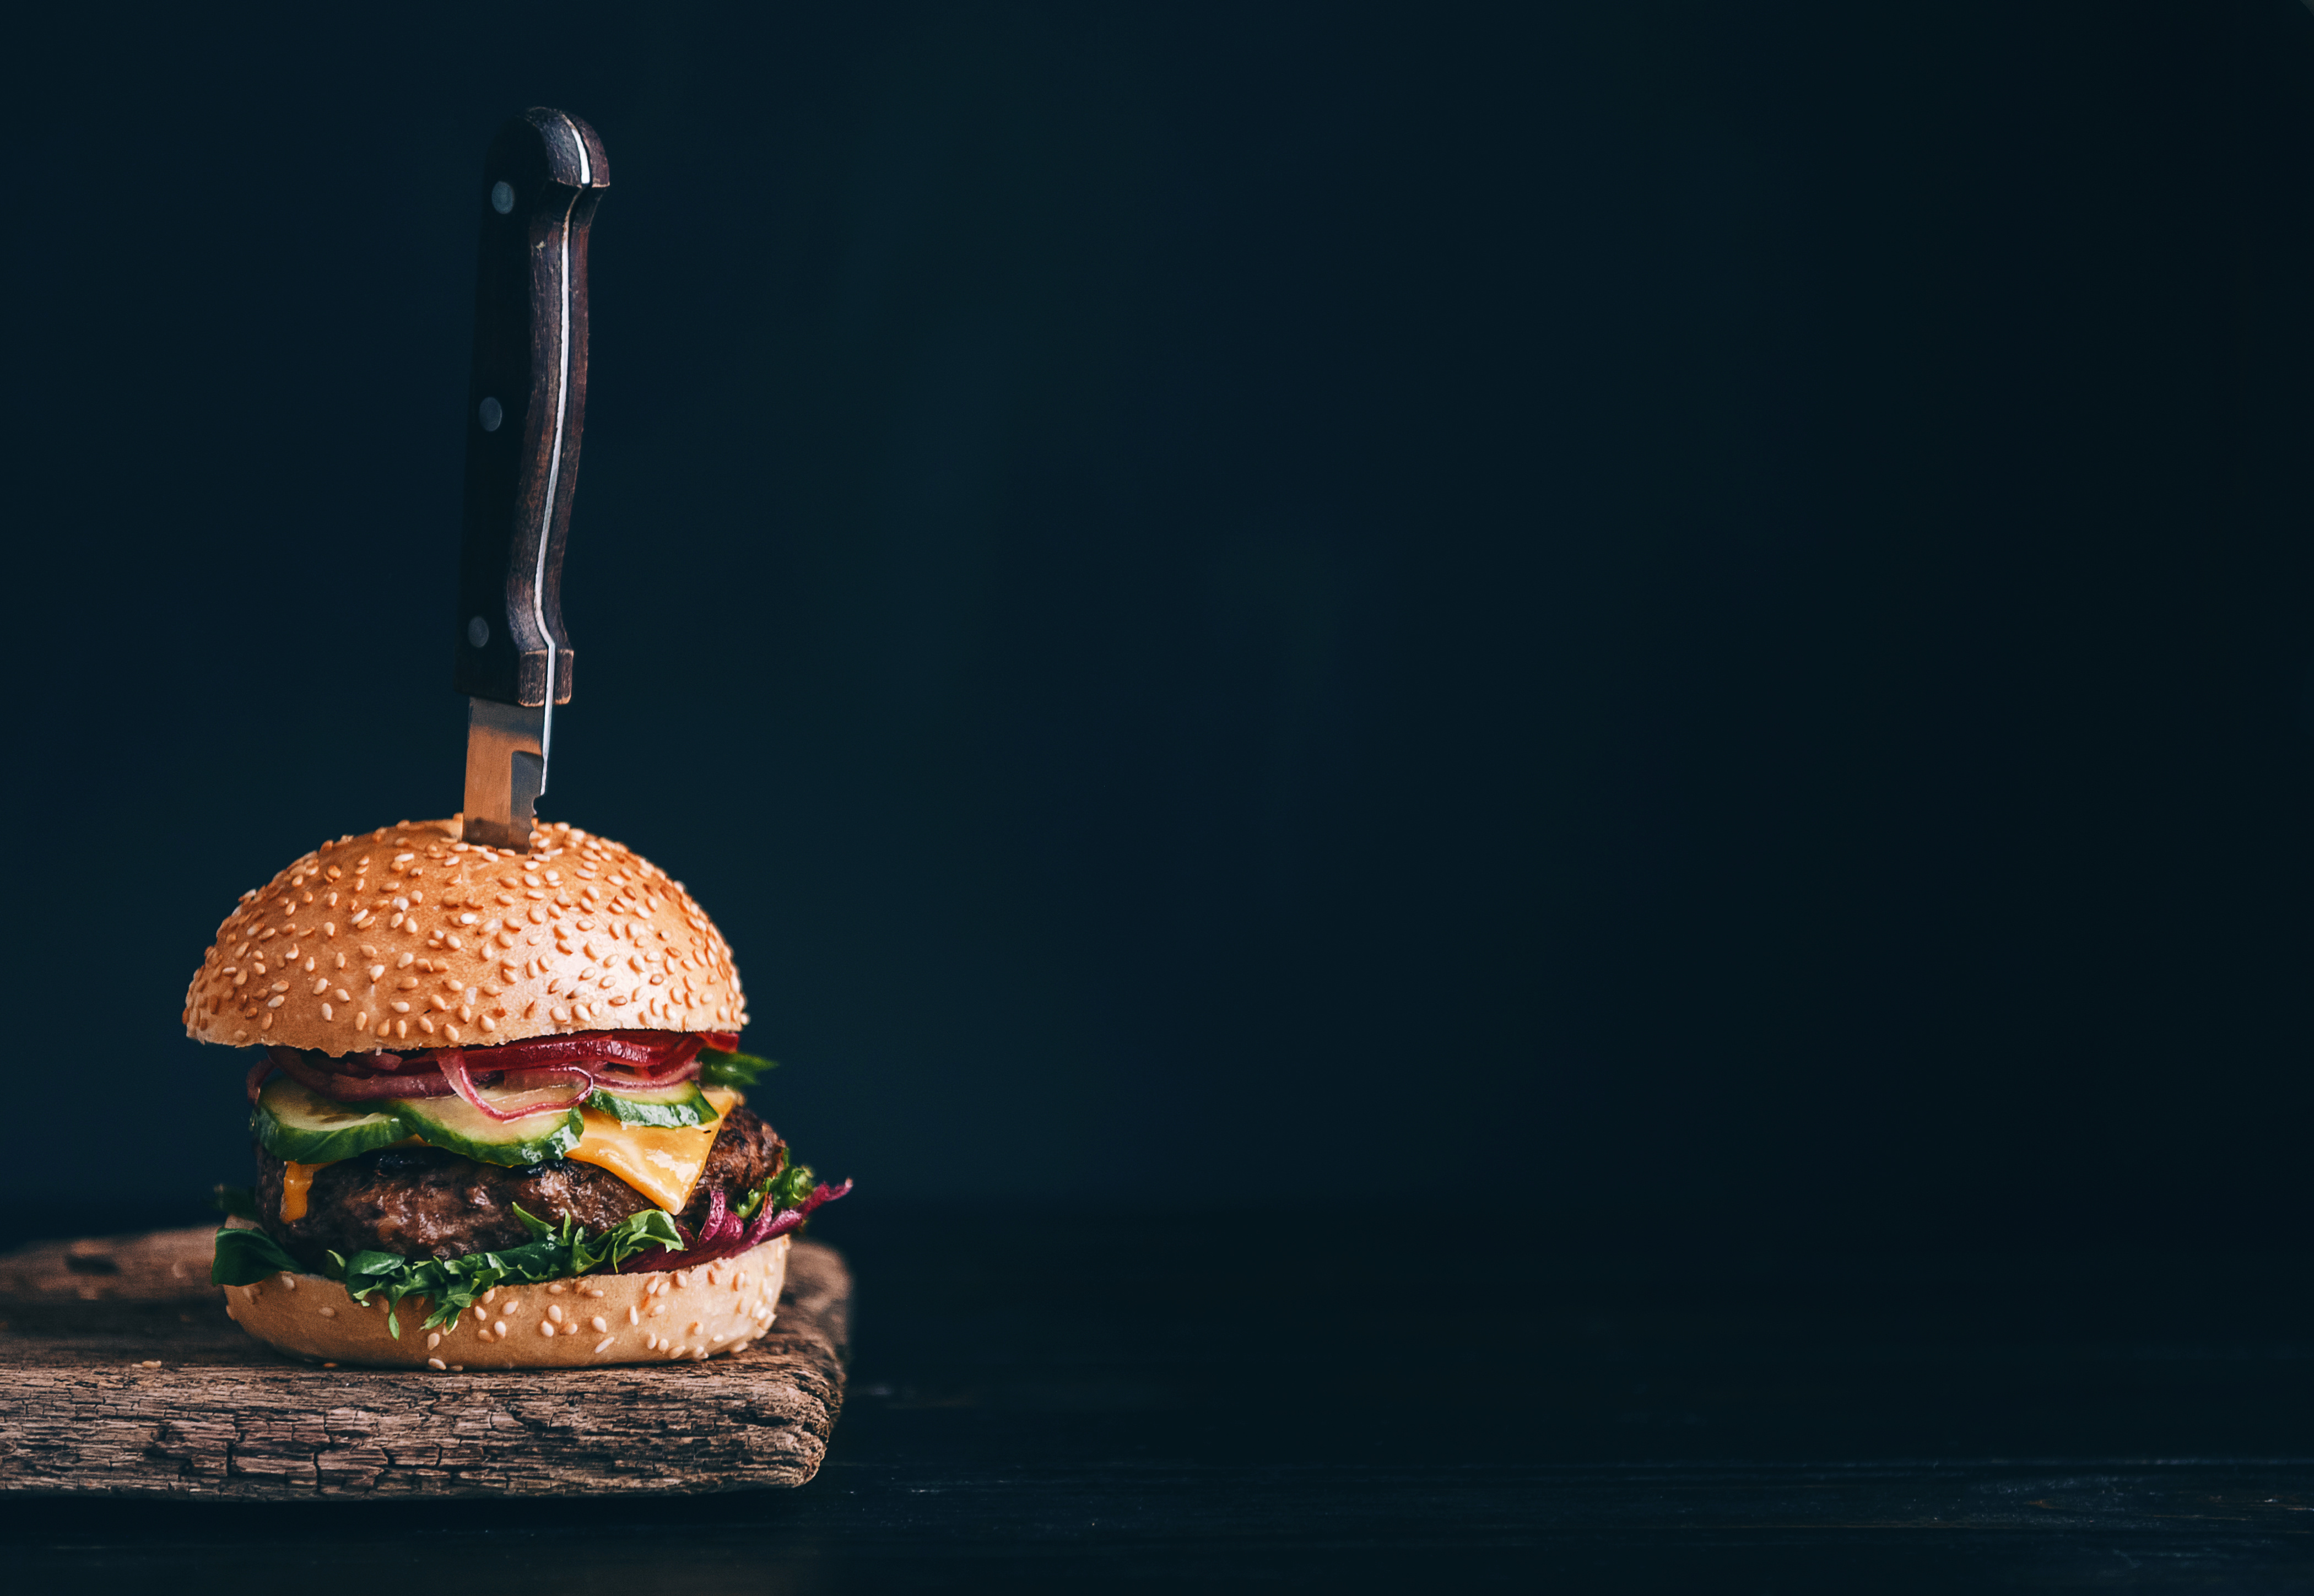 Panino con hamburger infilzato da un coltello su sfondo nero; conpcet: fast food, junk food